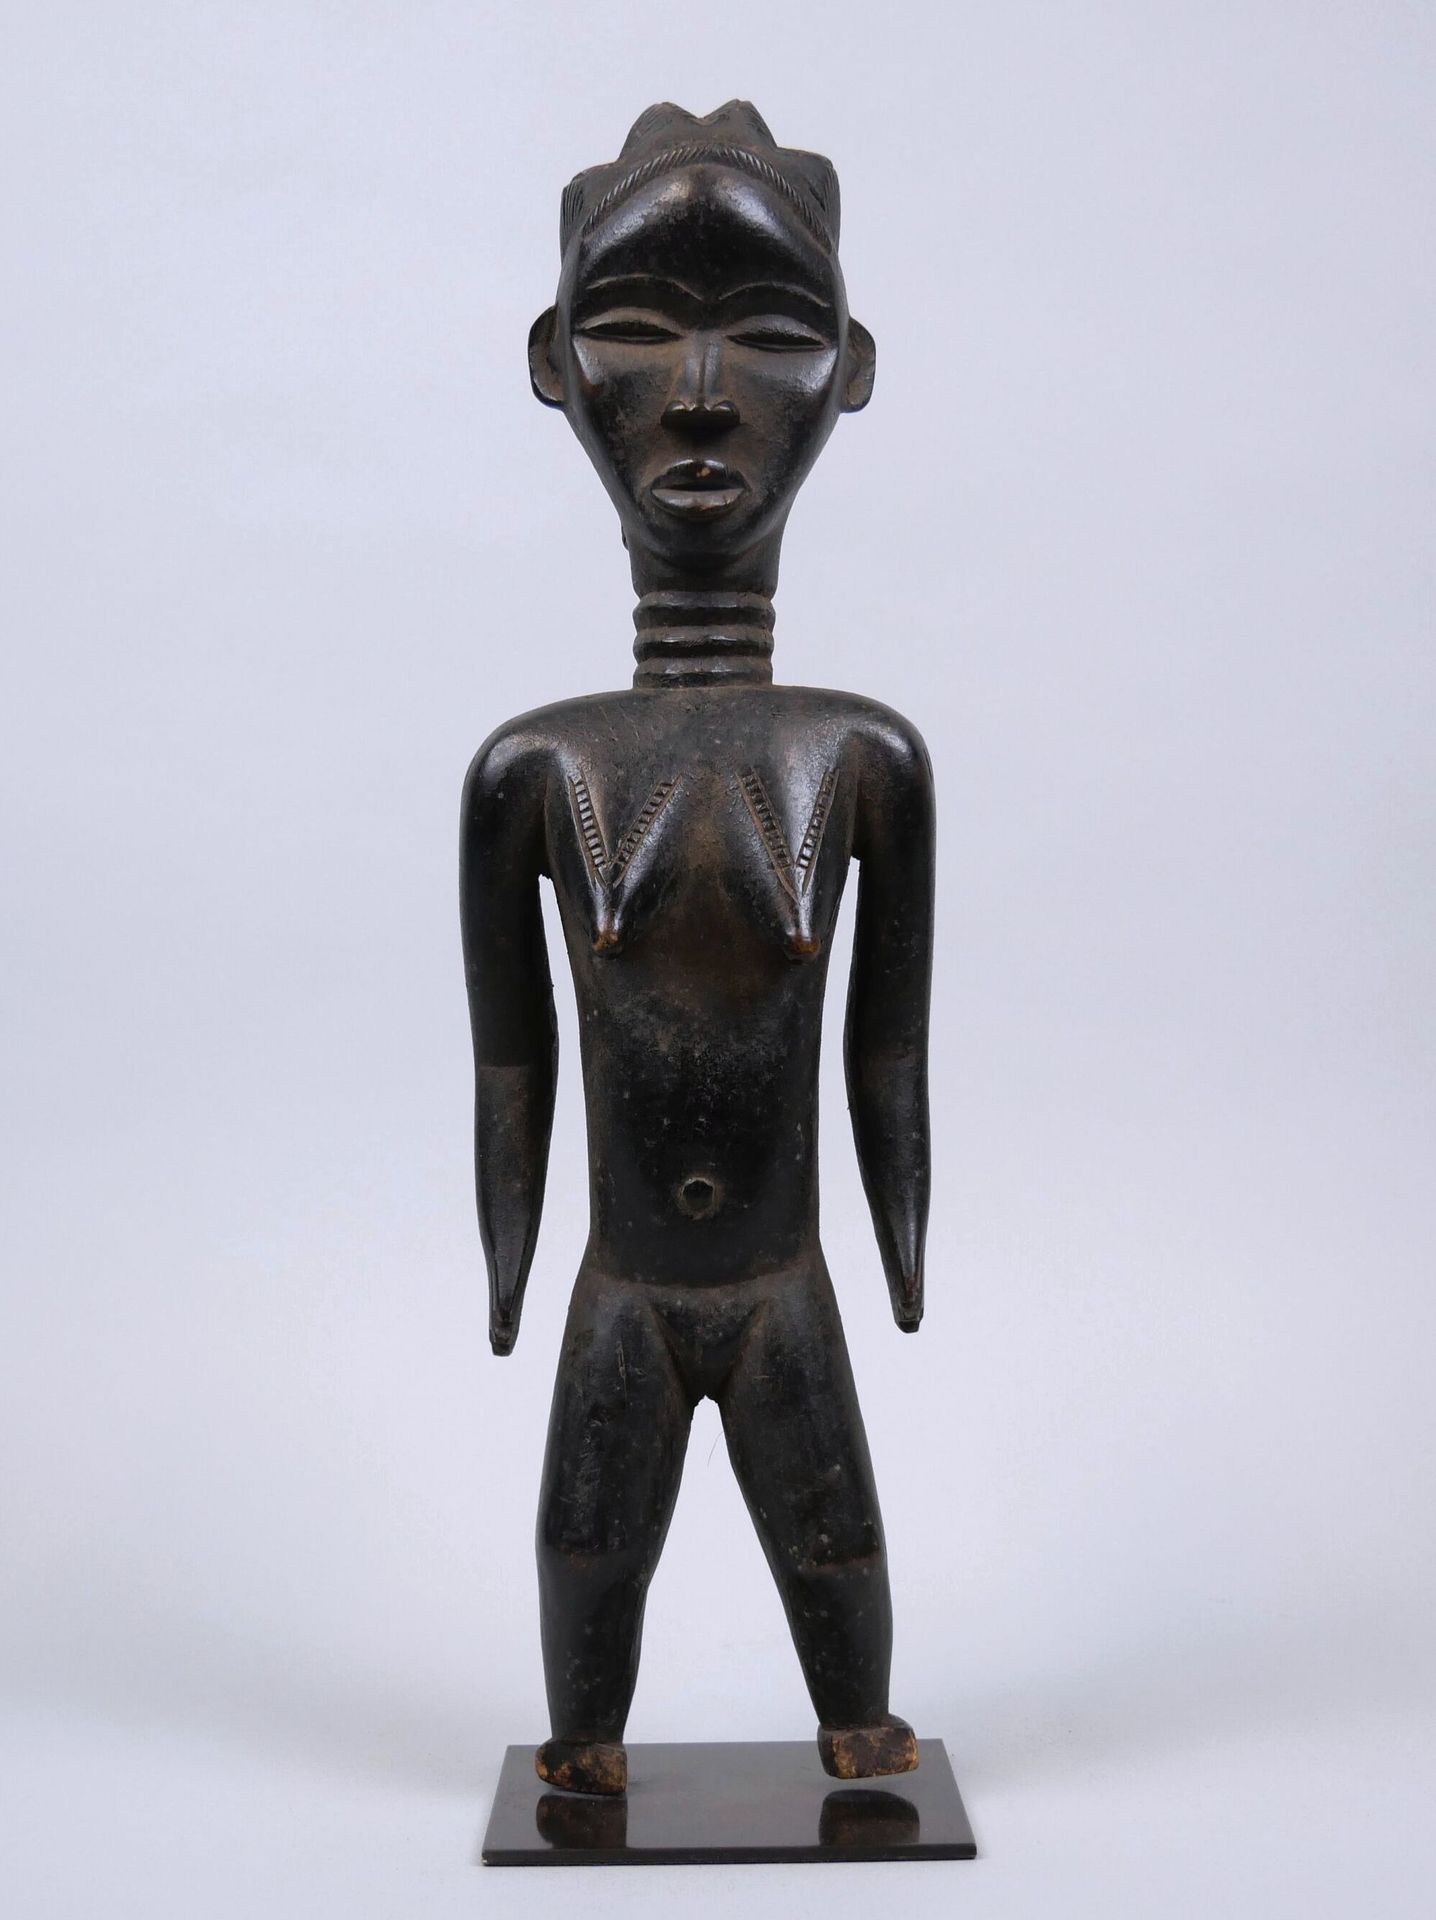 Null 尼日利亚 - 伊加拉人
带有黑色植物斑纹的木质女性雕像。
小脚缺失。
高度：39 厘米
底座

拍品可于 5 月 14 日星期二在巴黎第十五区（Mét&hellip;